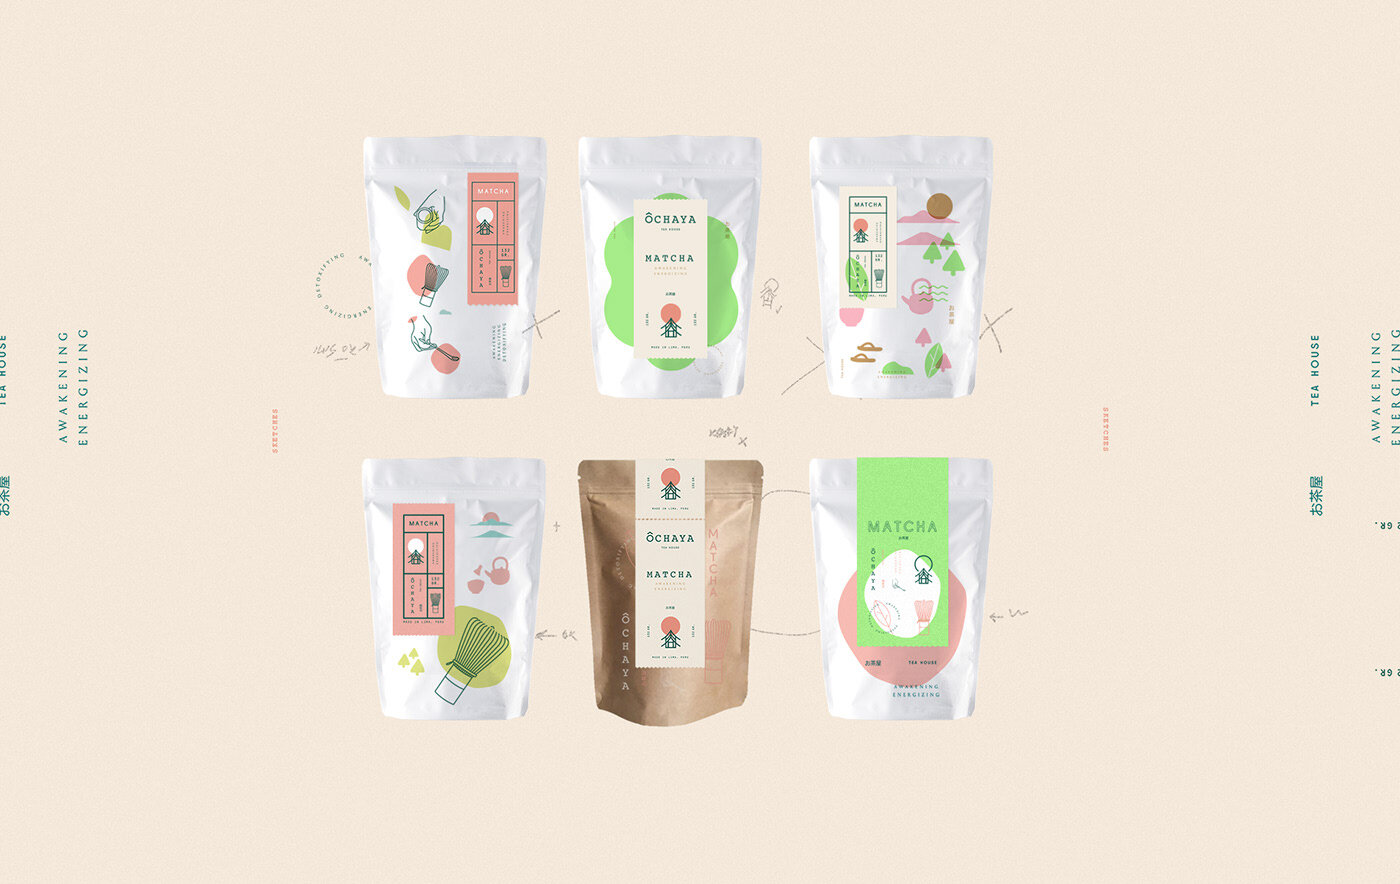 日式宣传茶室品牌视觉设计作品,日式风格抹茶品牌视觉设计。